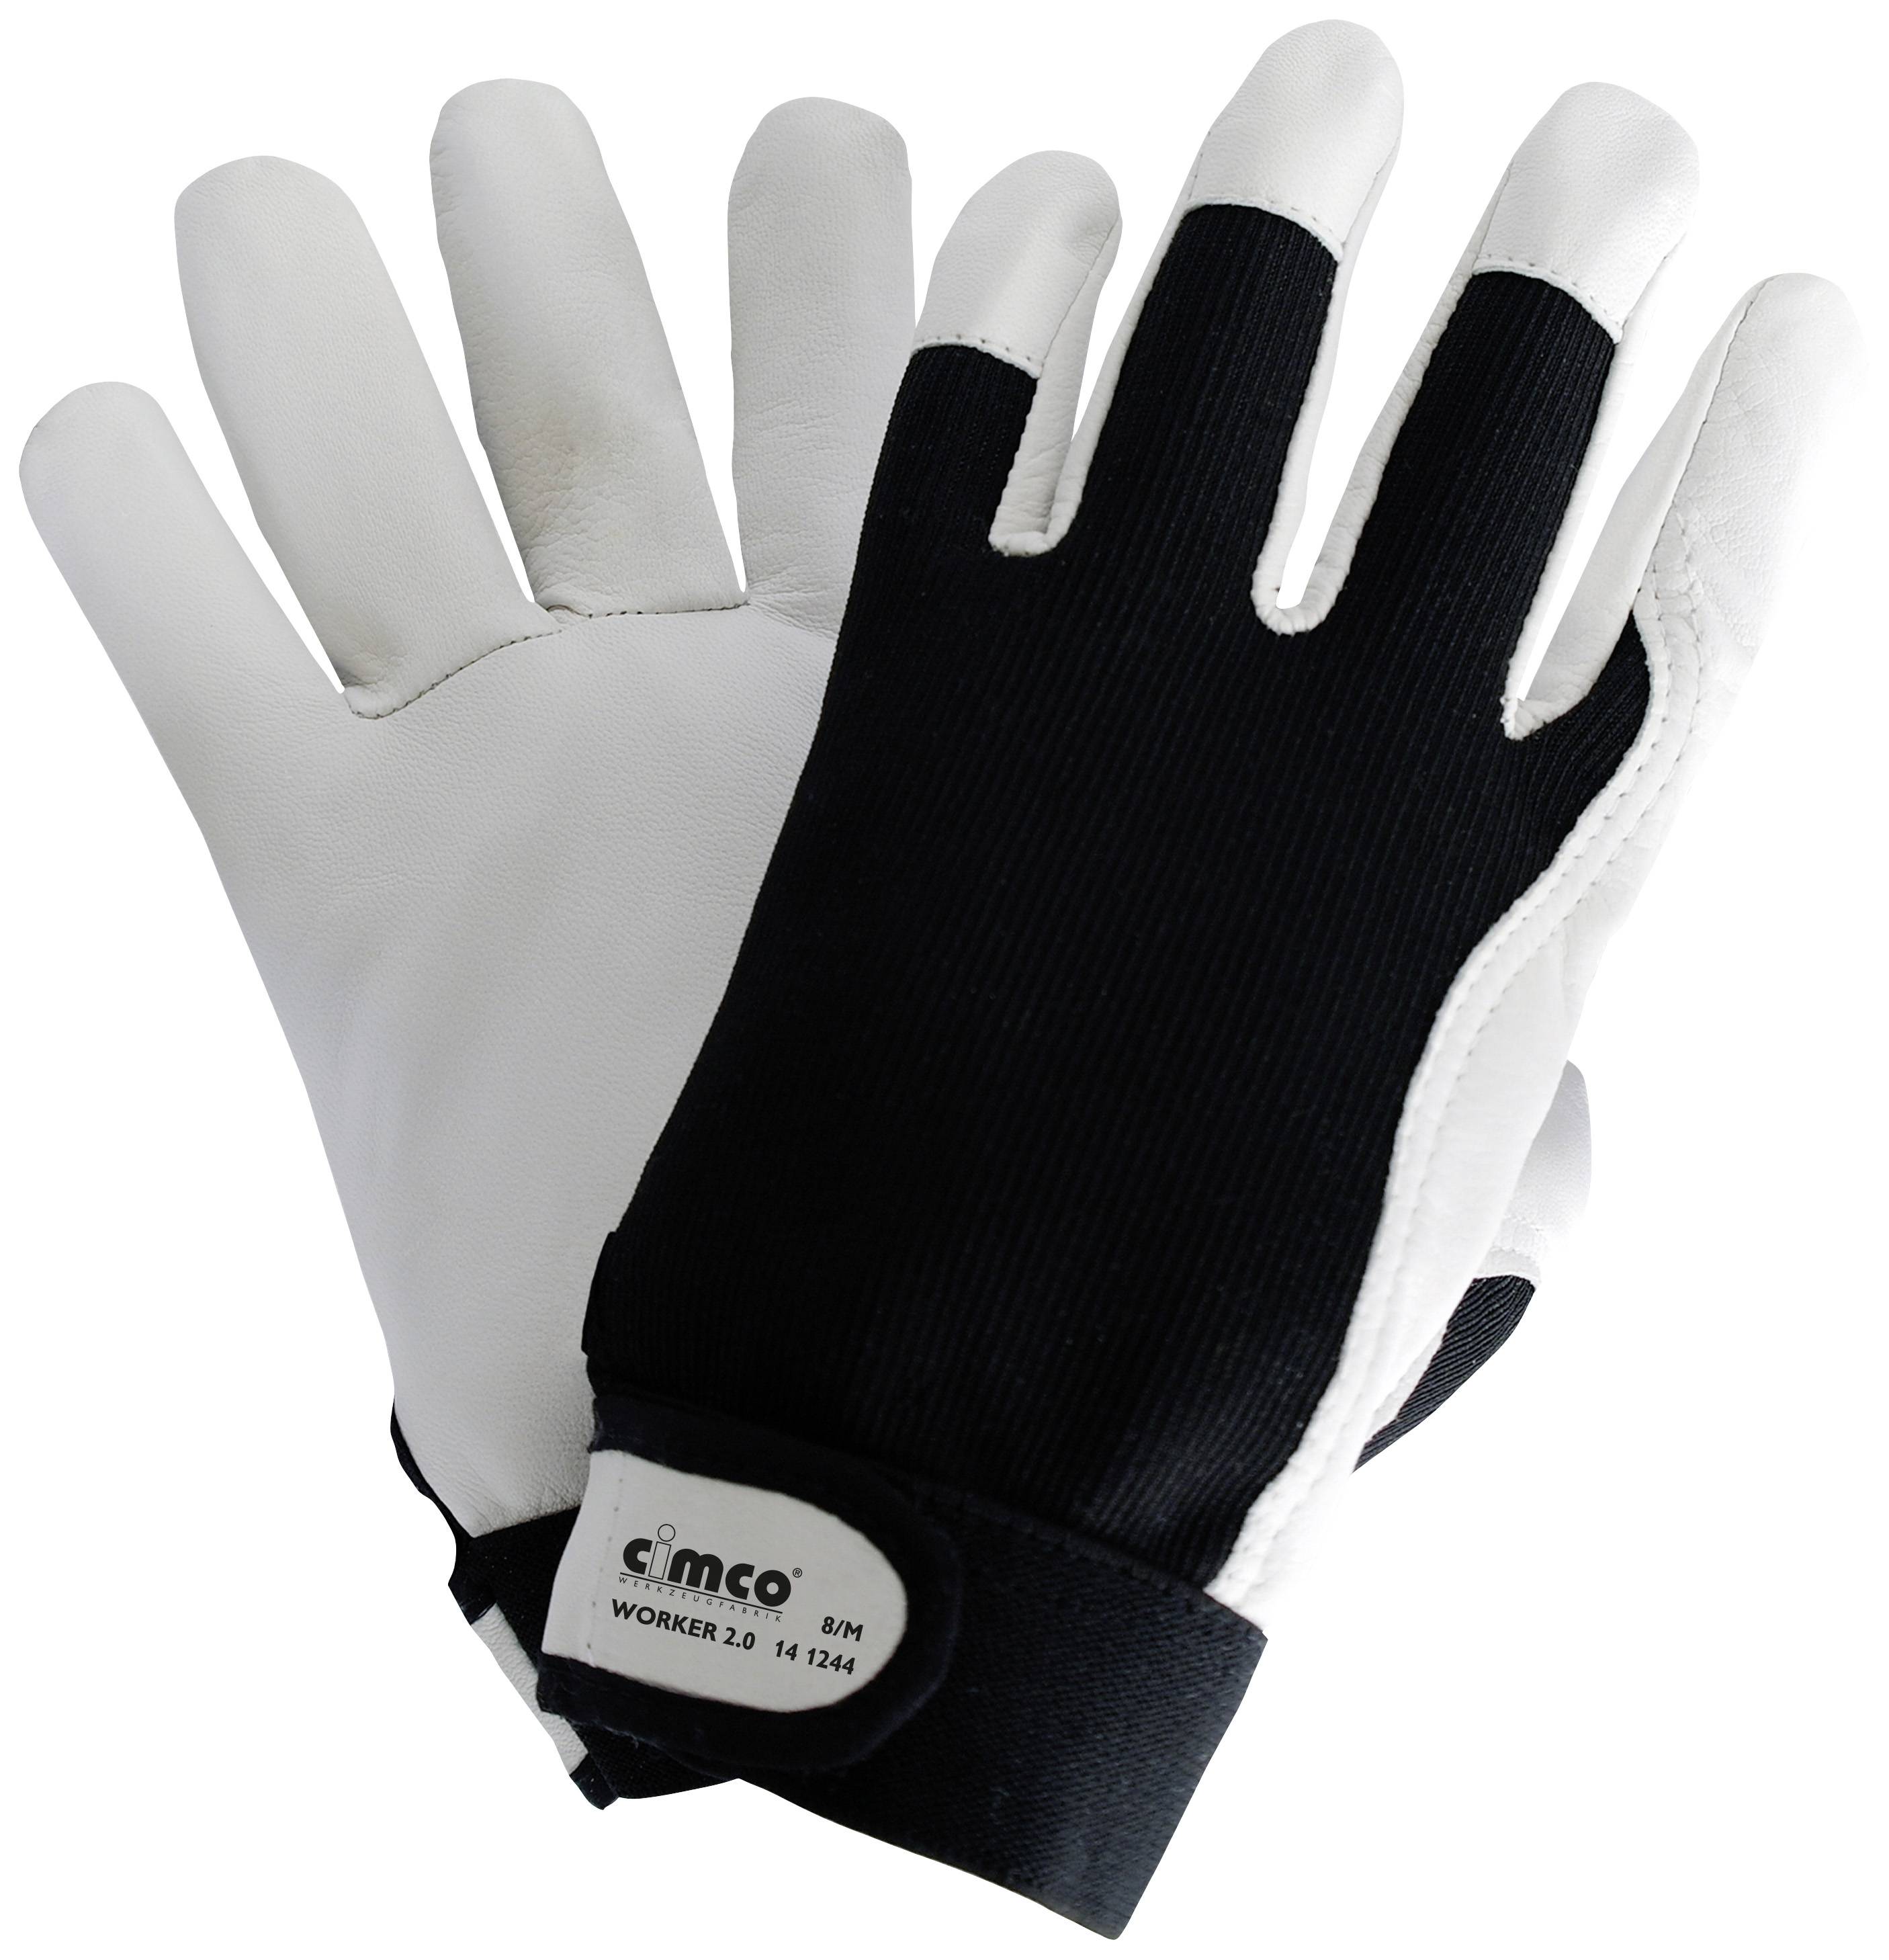 Cimco Worker 2.0 schwarz/weiß 141246 Nappaleder Arbeitshandschuh Größe (Handschuhe): 10, XL EN 388 1